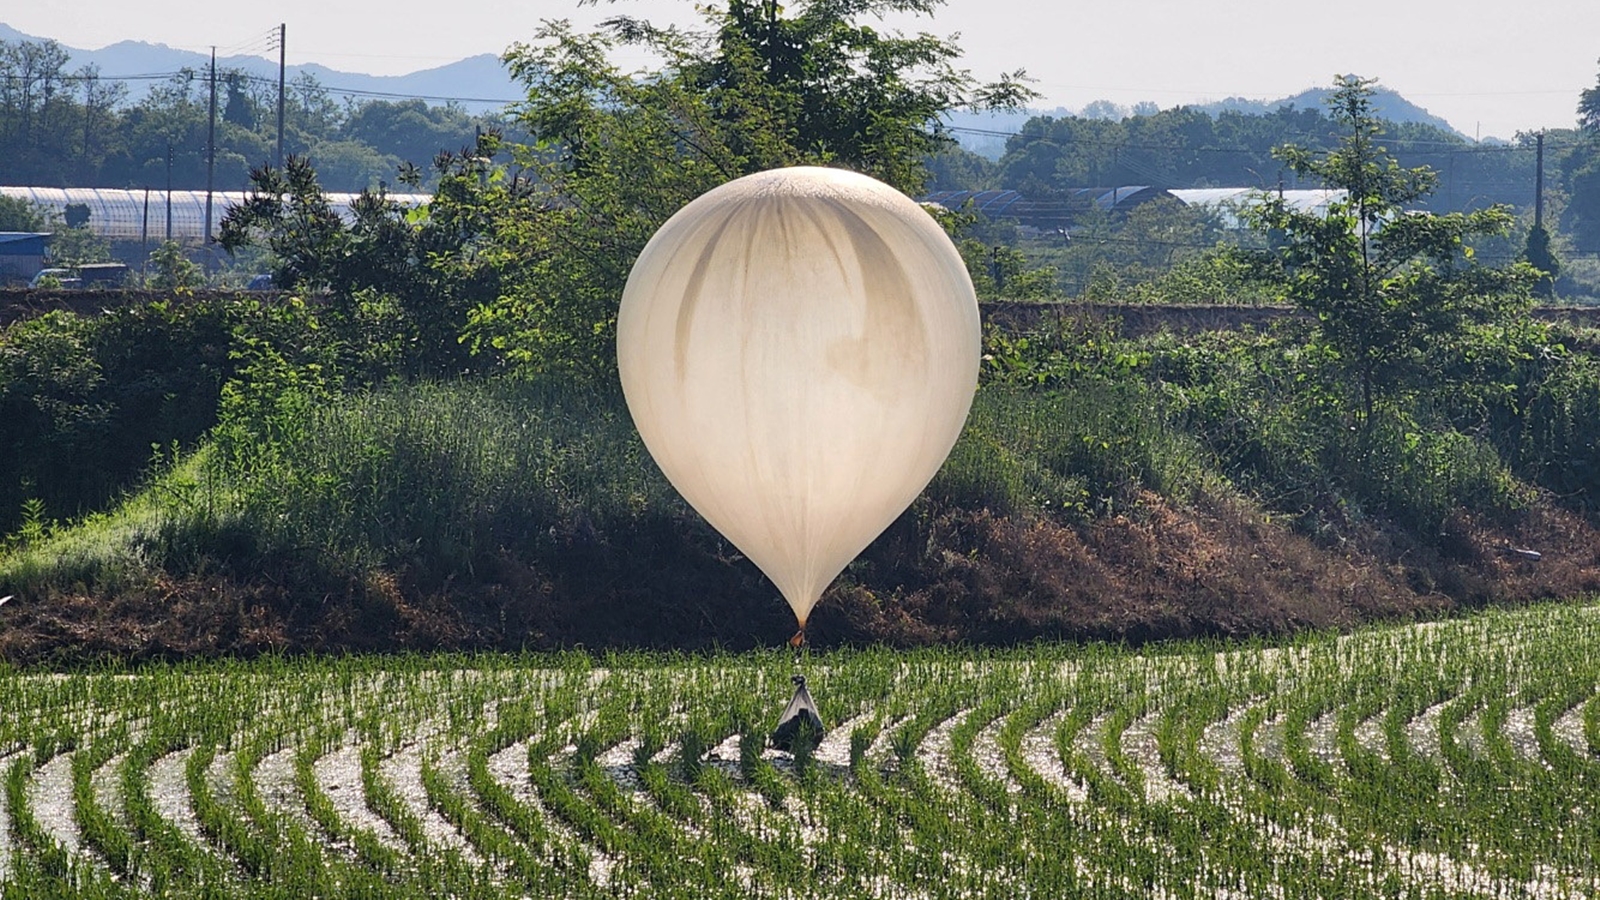 उत्तर कोरिया ने सियोल की ओर फिर से गुब्बारे छोड़े, दक्षिण कोरिया में कचरा गिराने की संभावना